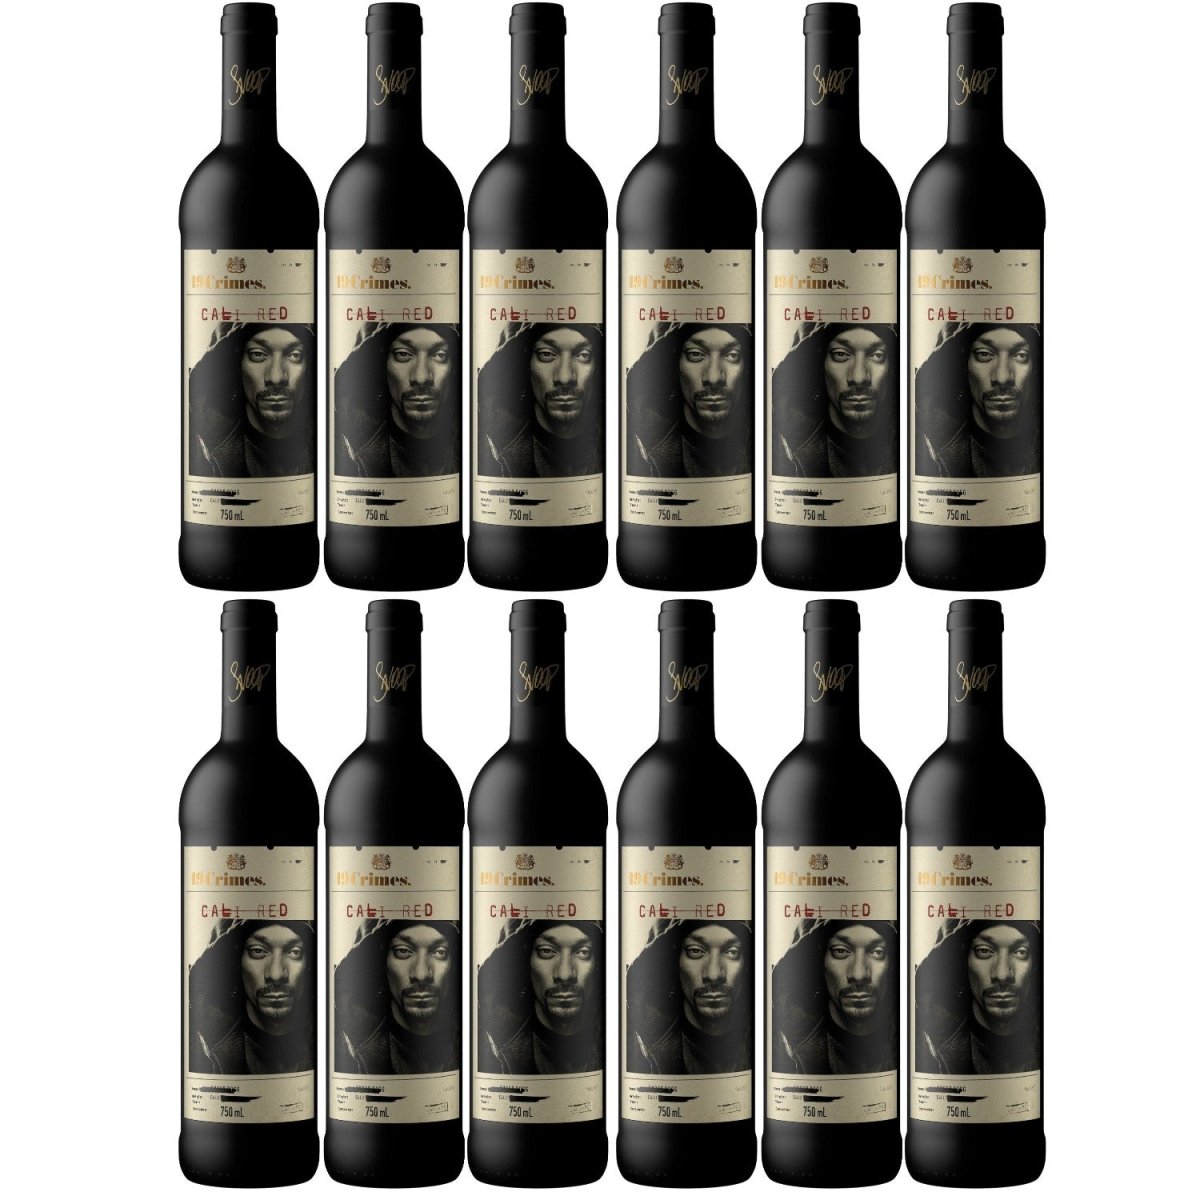 19 Crimes Snoop Dogg Cali Red Penfolds Rotwein Wein Halbtrocken Kalifornien (12 x 0.75l) - Versanel - Wein